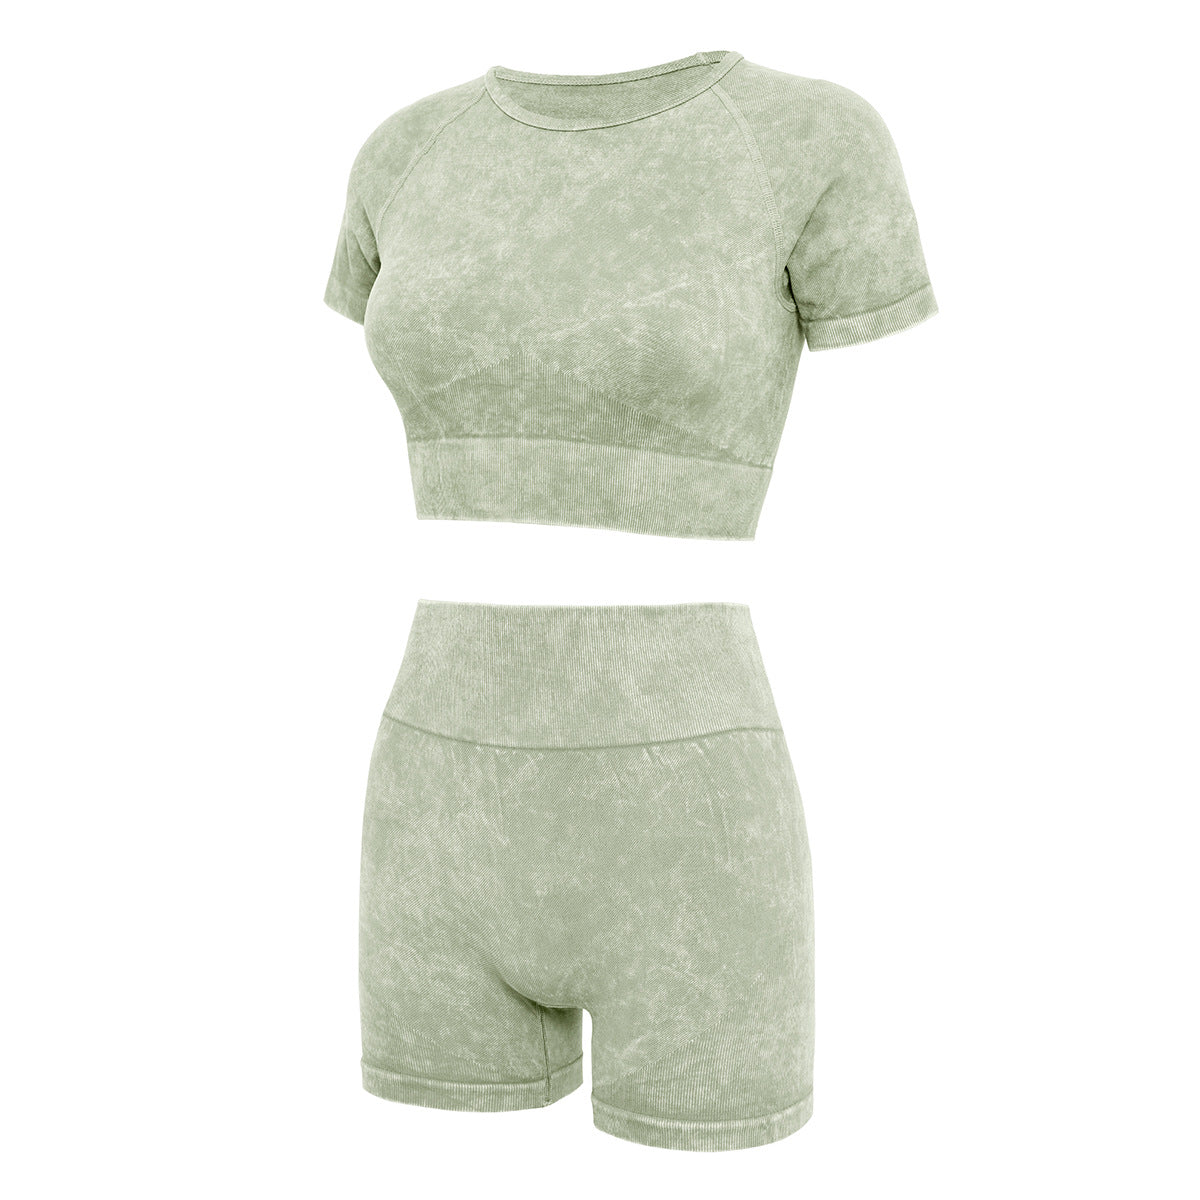 Yoga Suit Suit Women's Summer Shorts Short Sleeve Suit Sand-wash Imitation Denim Fitness Suit Yoga Wear